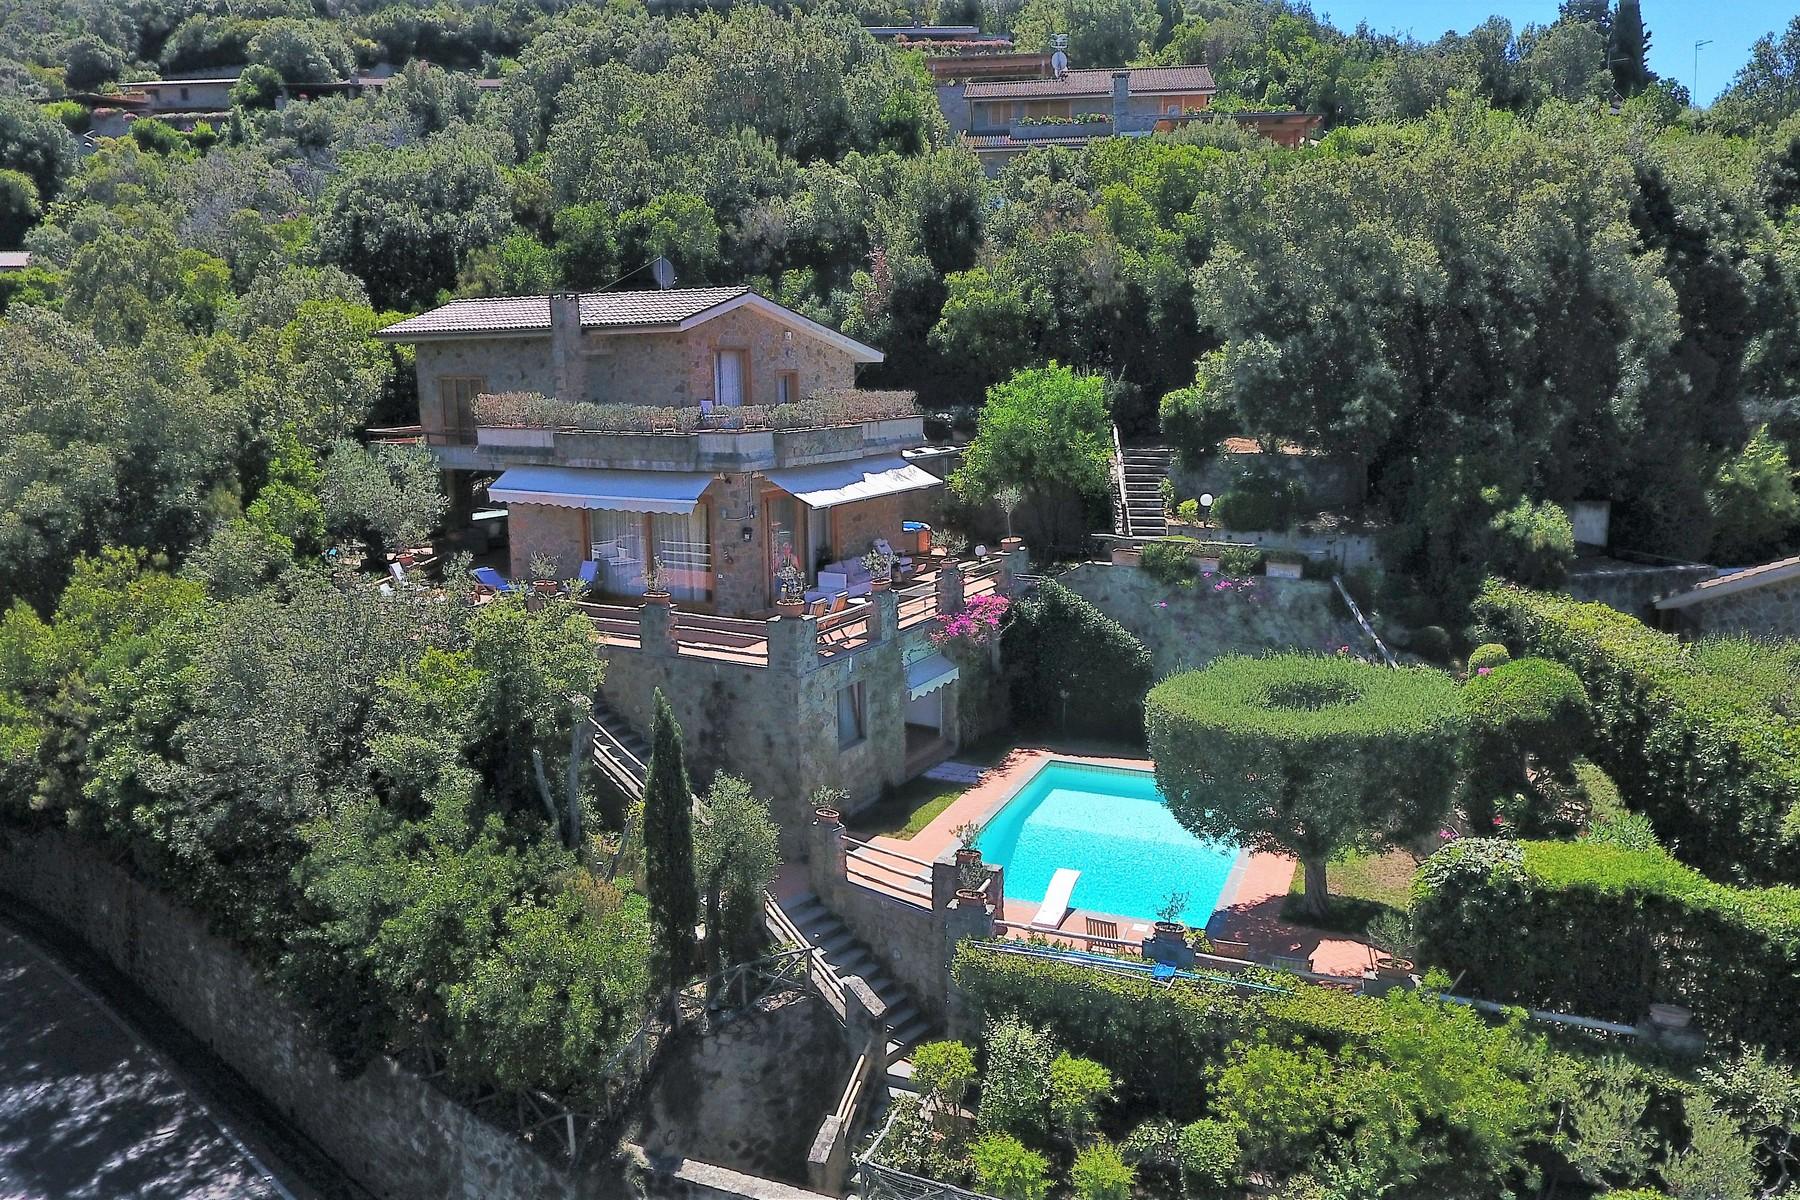 Villa moderna con piscina e giardino mediterraneo - 4